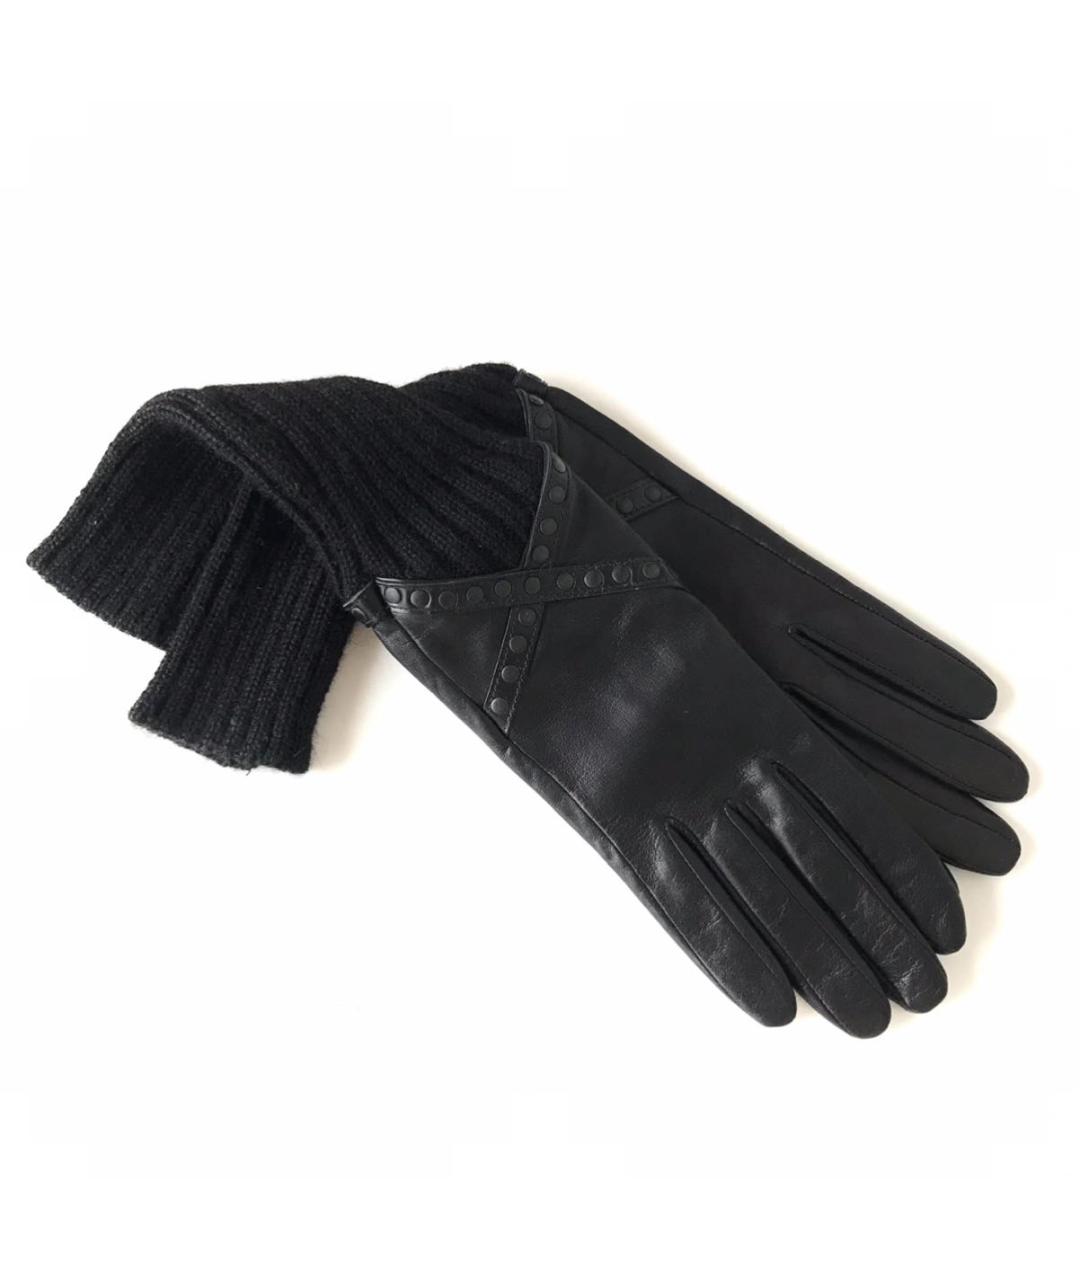 AGNELLE Черные кожаные перчатки, фото 3